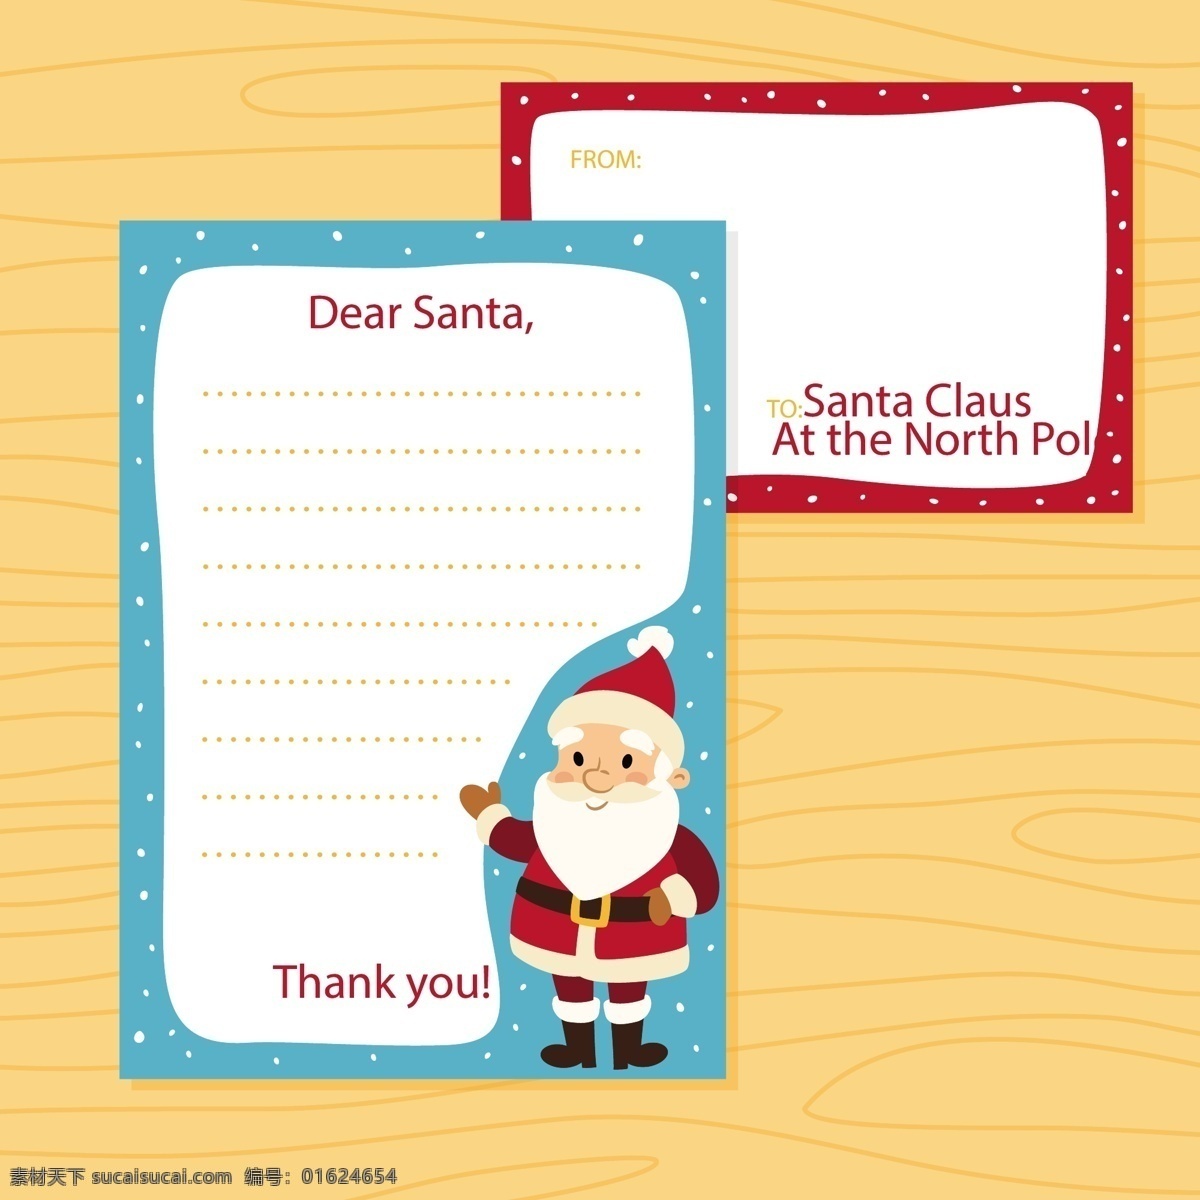 可爱 圣诞老人 圣诞 信 模板 2018 圣诞节 节日素材 可爱圣诞老人 圣诞素材 圣诞信纸 圣诞元素